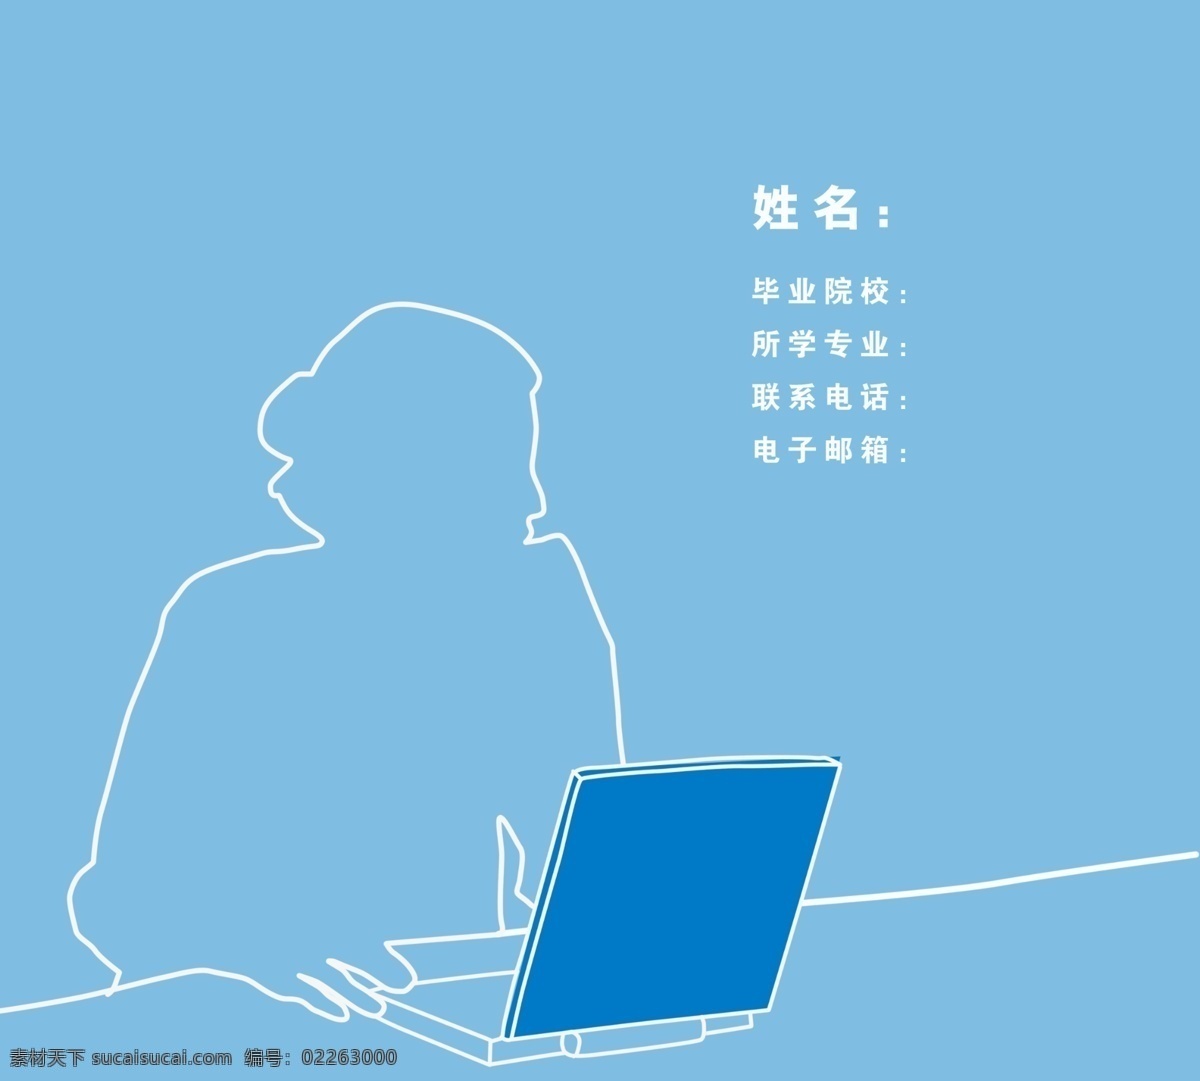 电脑 封面 广告设计模板 简历 简历封面 模板下载 女人 蓝色 商务 上网 其他模版 源文件 模板